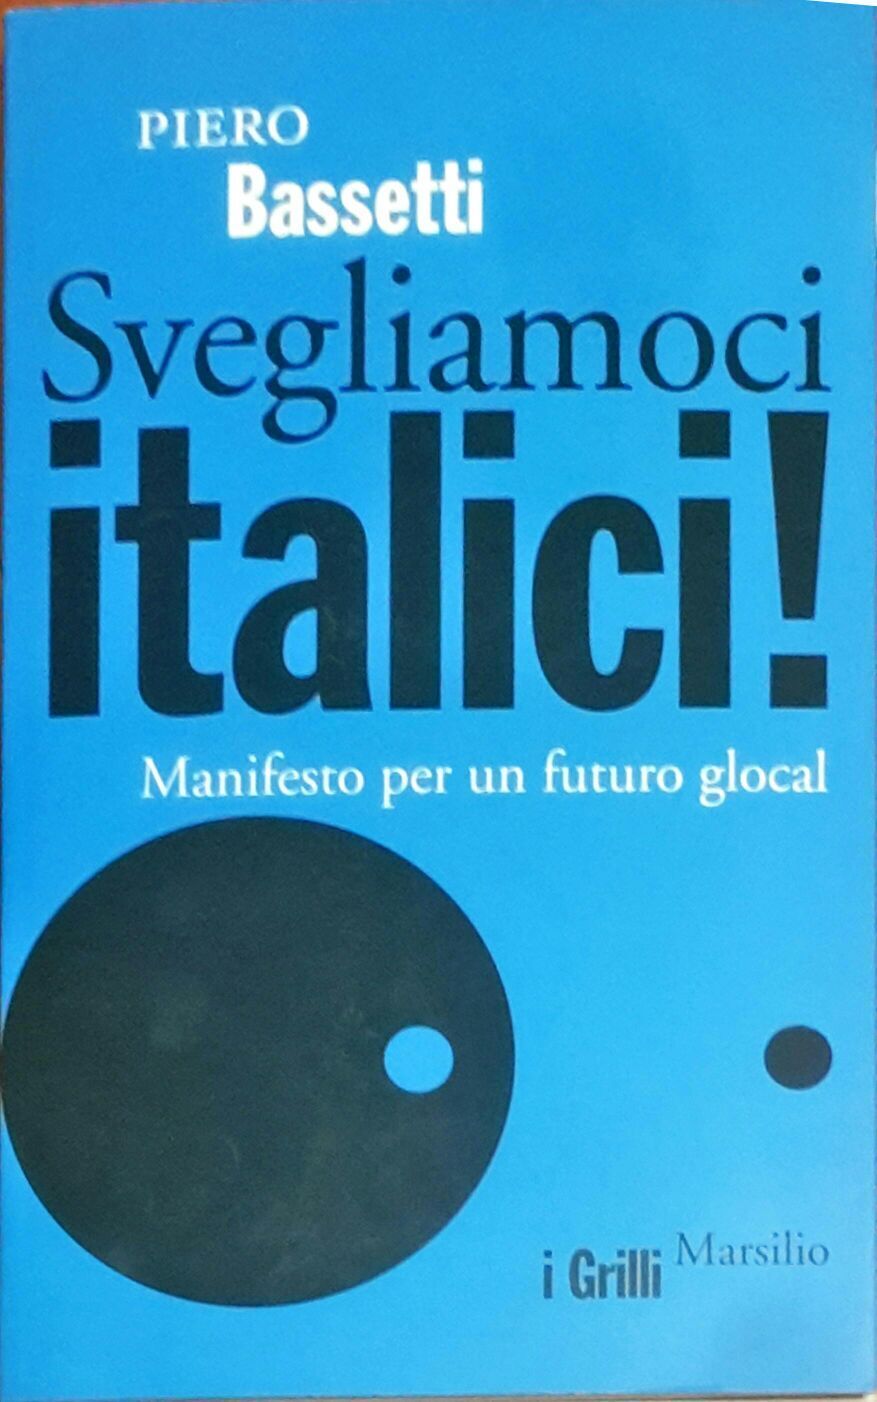 Svegliamoci italici! Manifesto per un futuro glocal - Piero Bassetti - Marsilio  libro usato